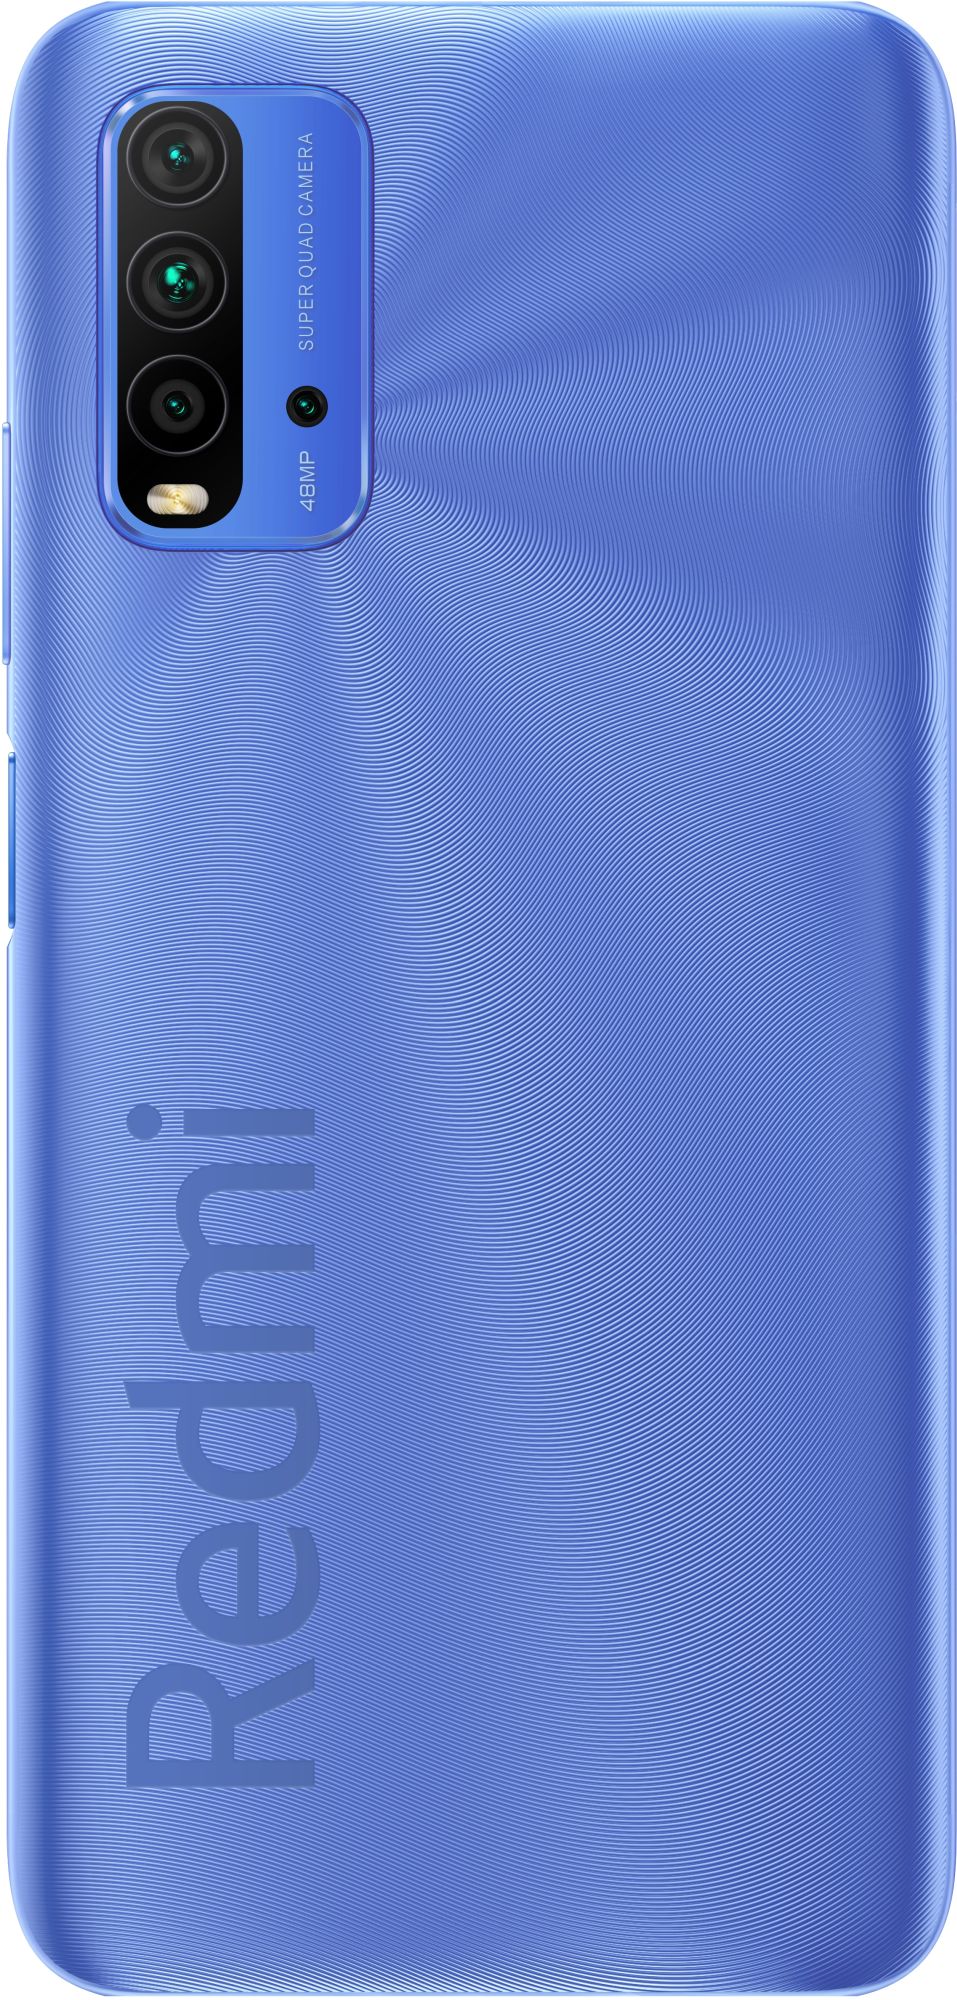 Xiaomi Redmi 9t